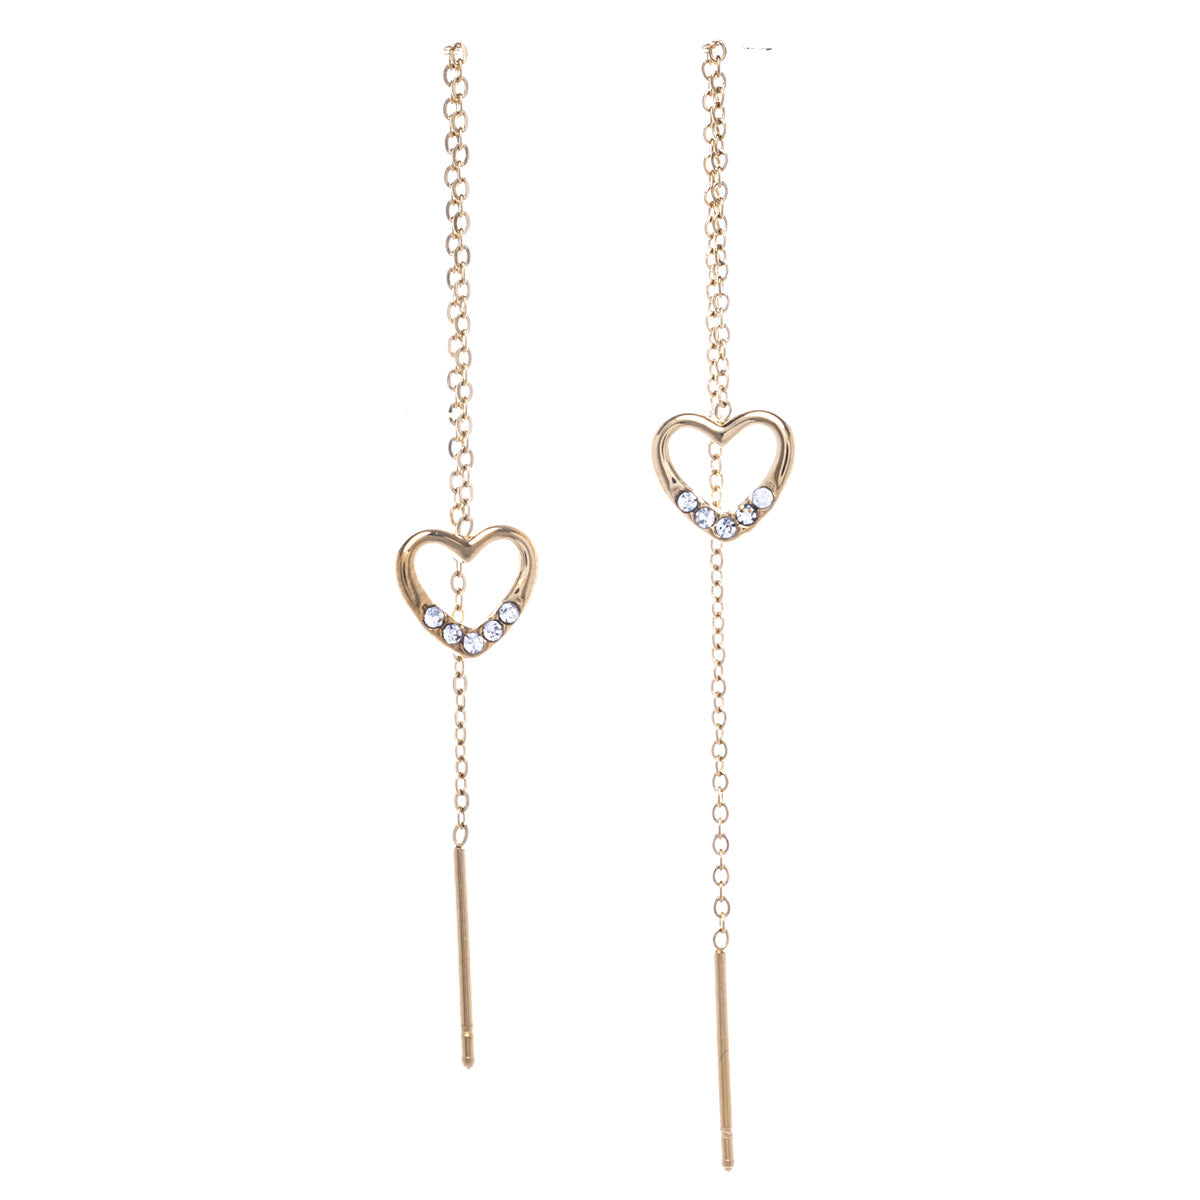 Chain earrings with glittering hearts (Steel 316L)